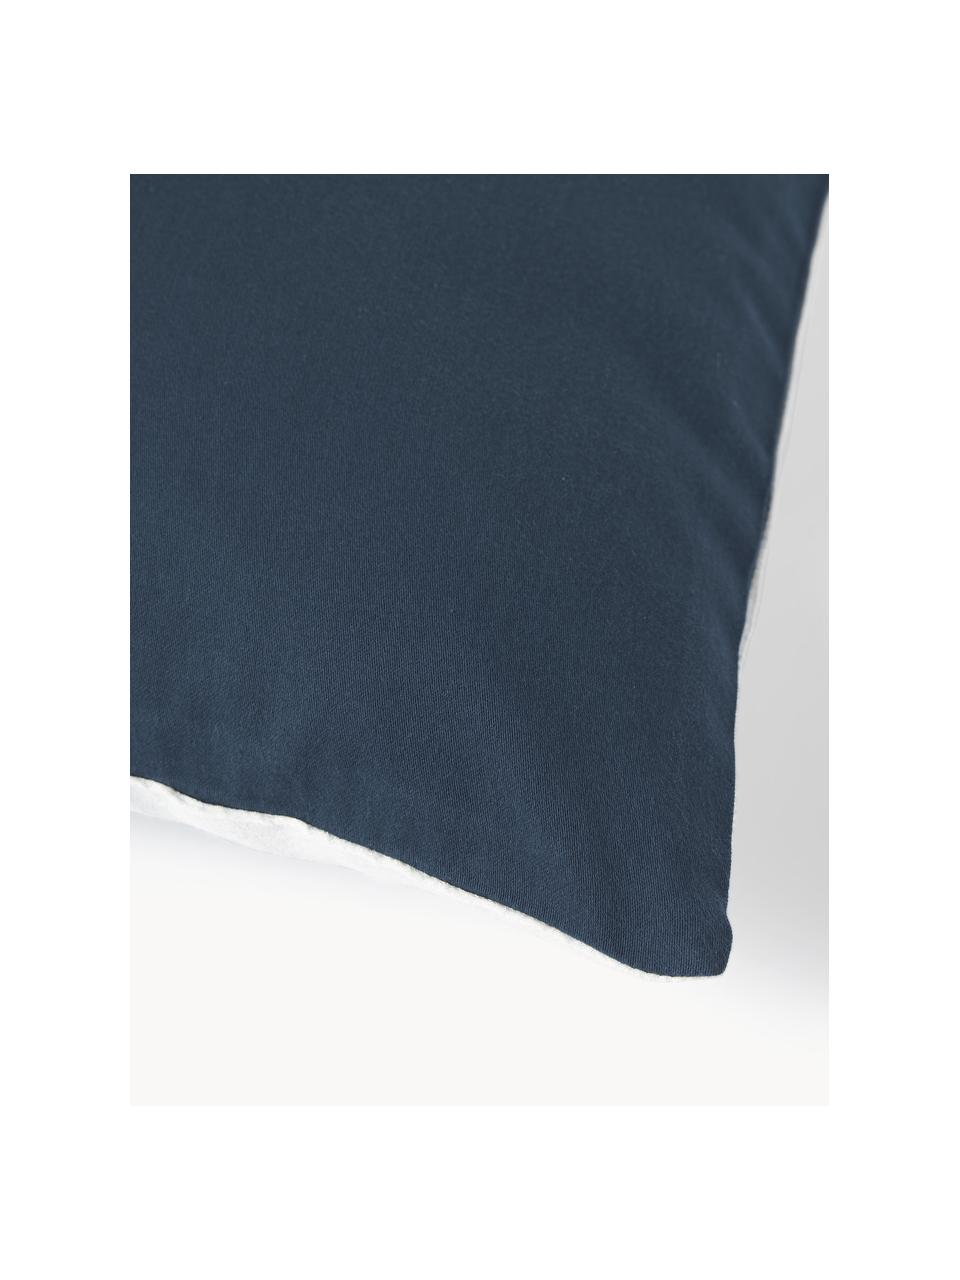 Kussenhoes Aryane uit zijde, Donkerblauw, wit, B 45 x L 45 cm